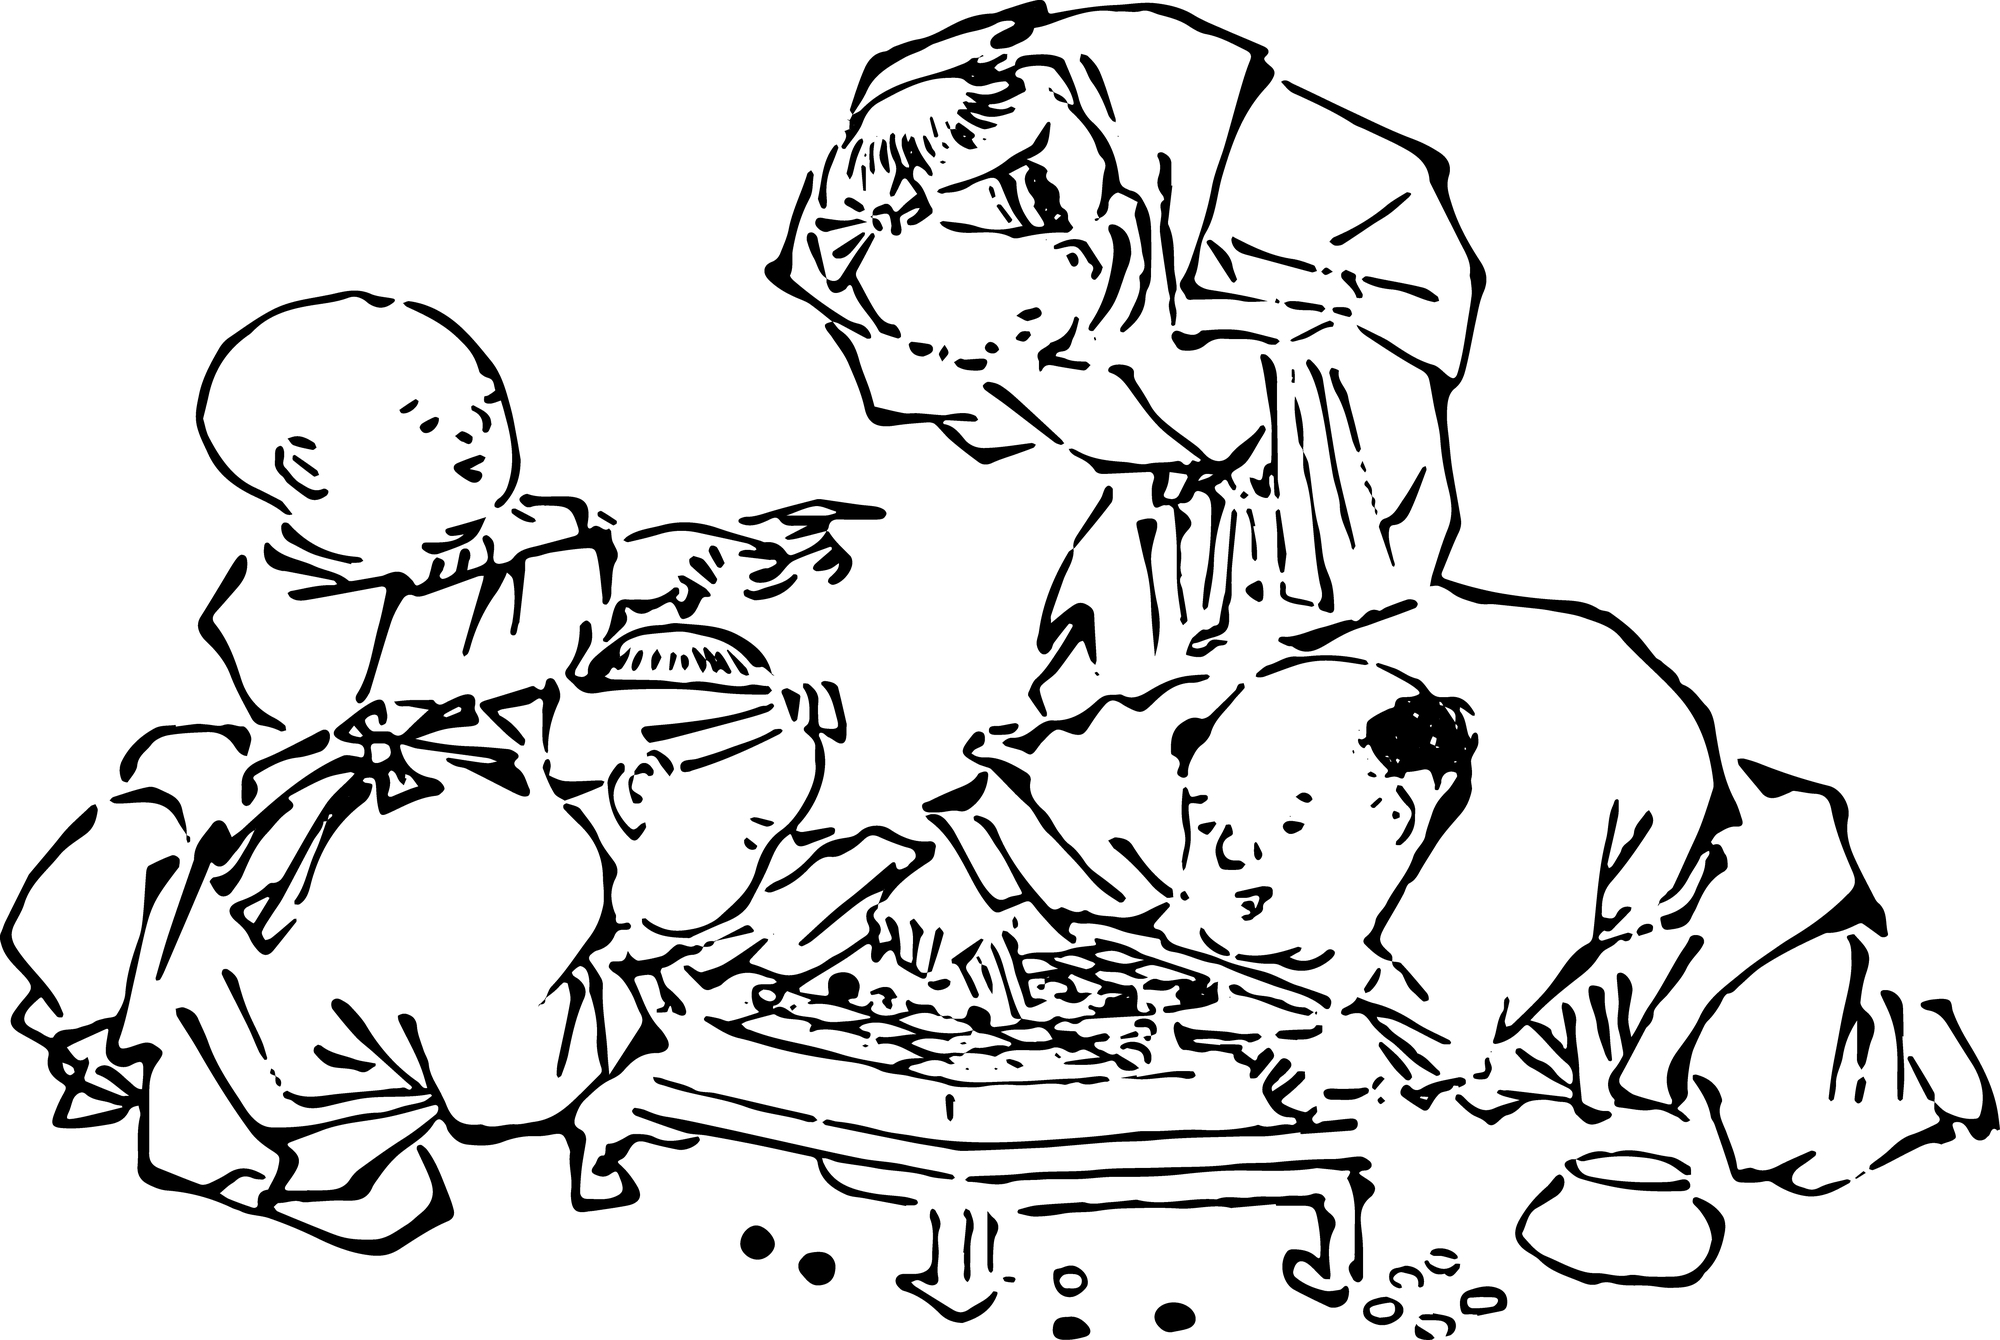 囲碁が武家から農業・商業を営む多くの人々にまで広まっていったのは鎌倉・室町時代のあたり